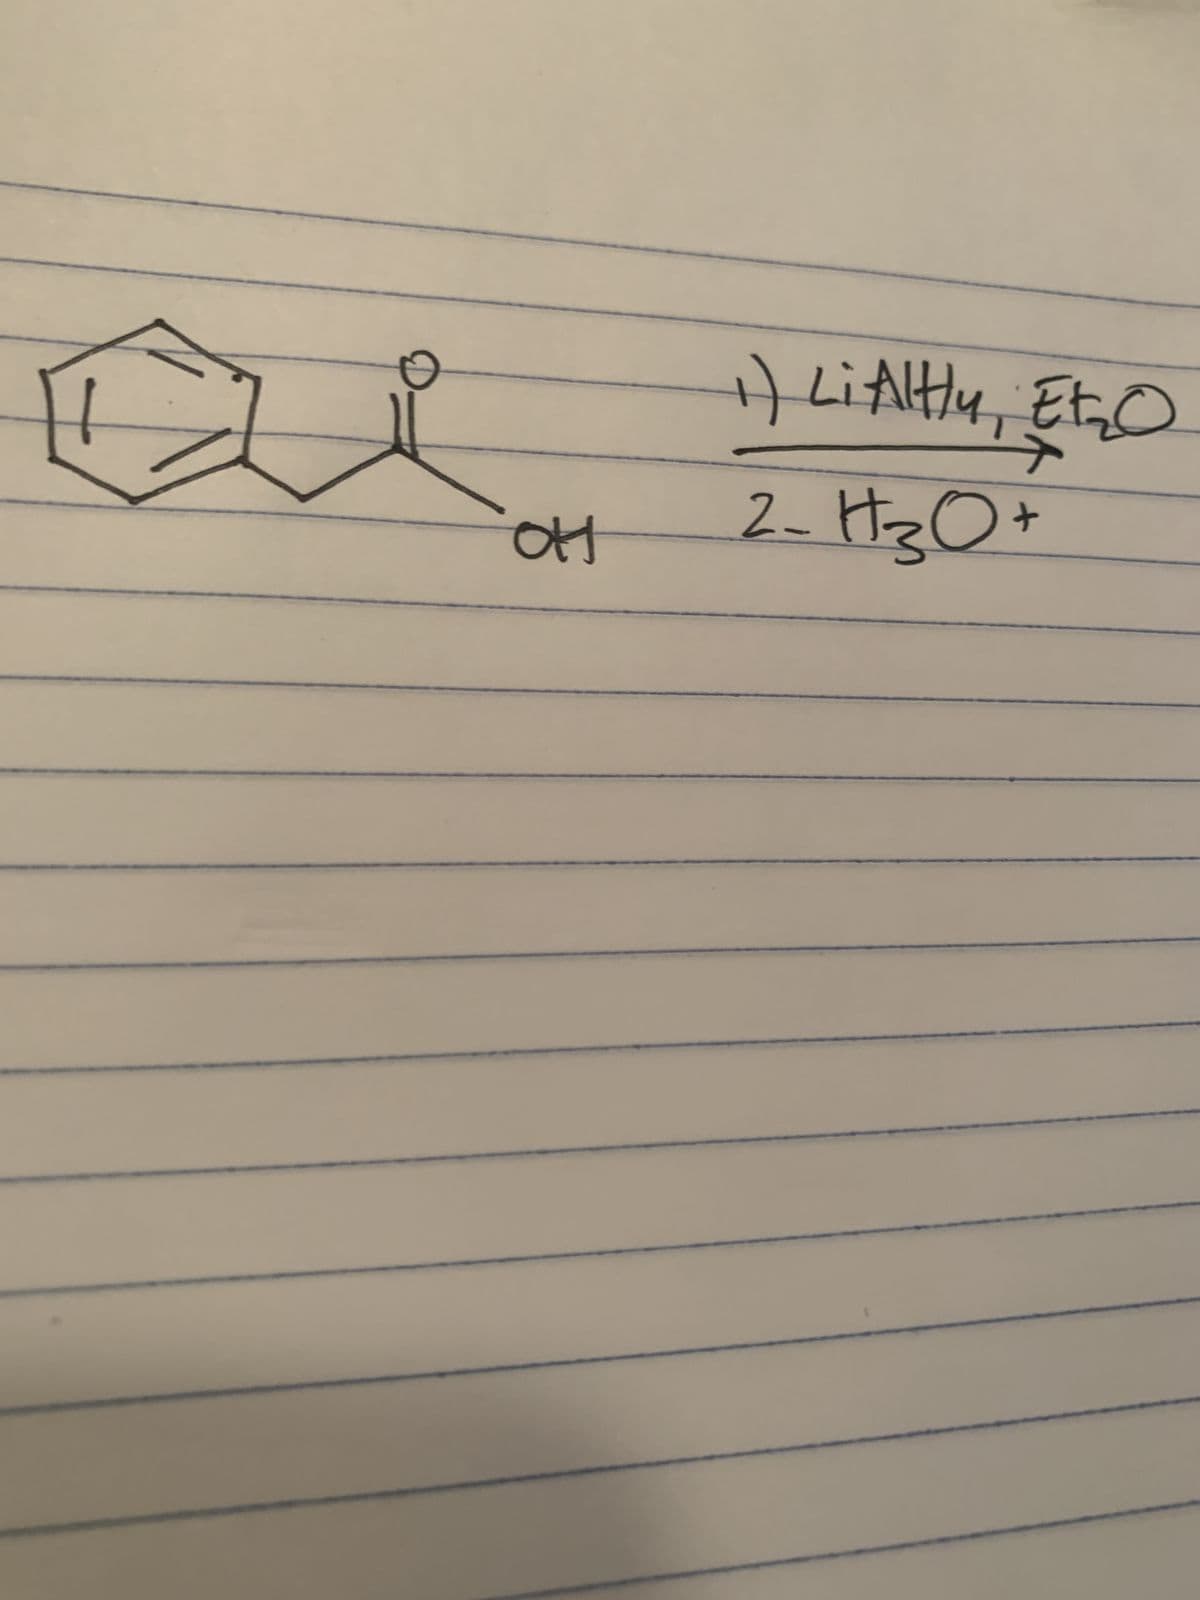 OH
1) LiAlHY, EL₂₂O
4
2-H₂O +